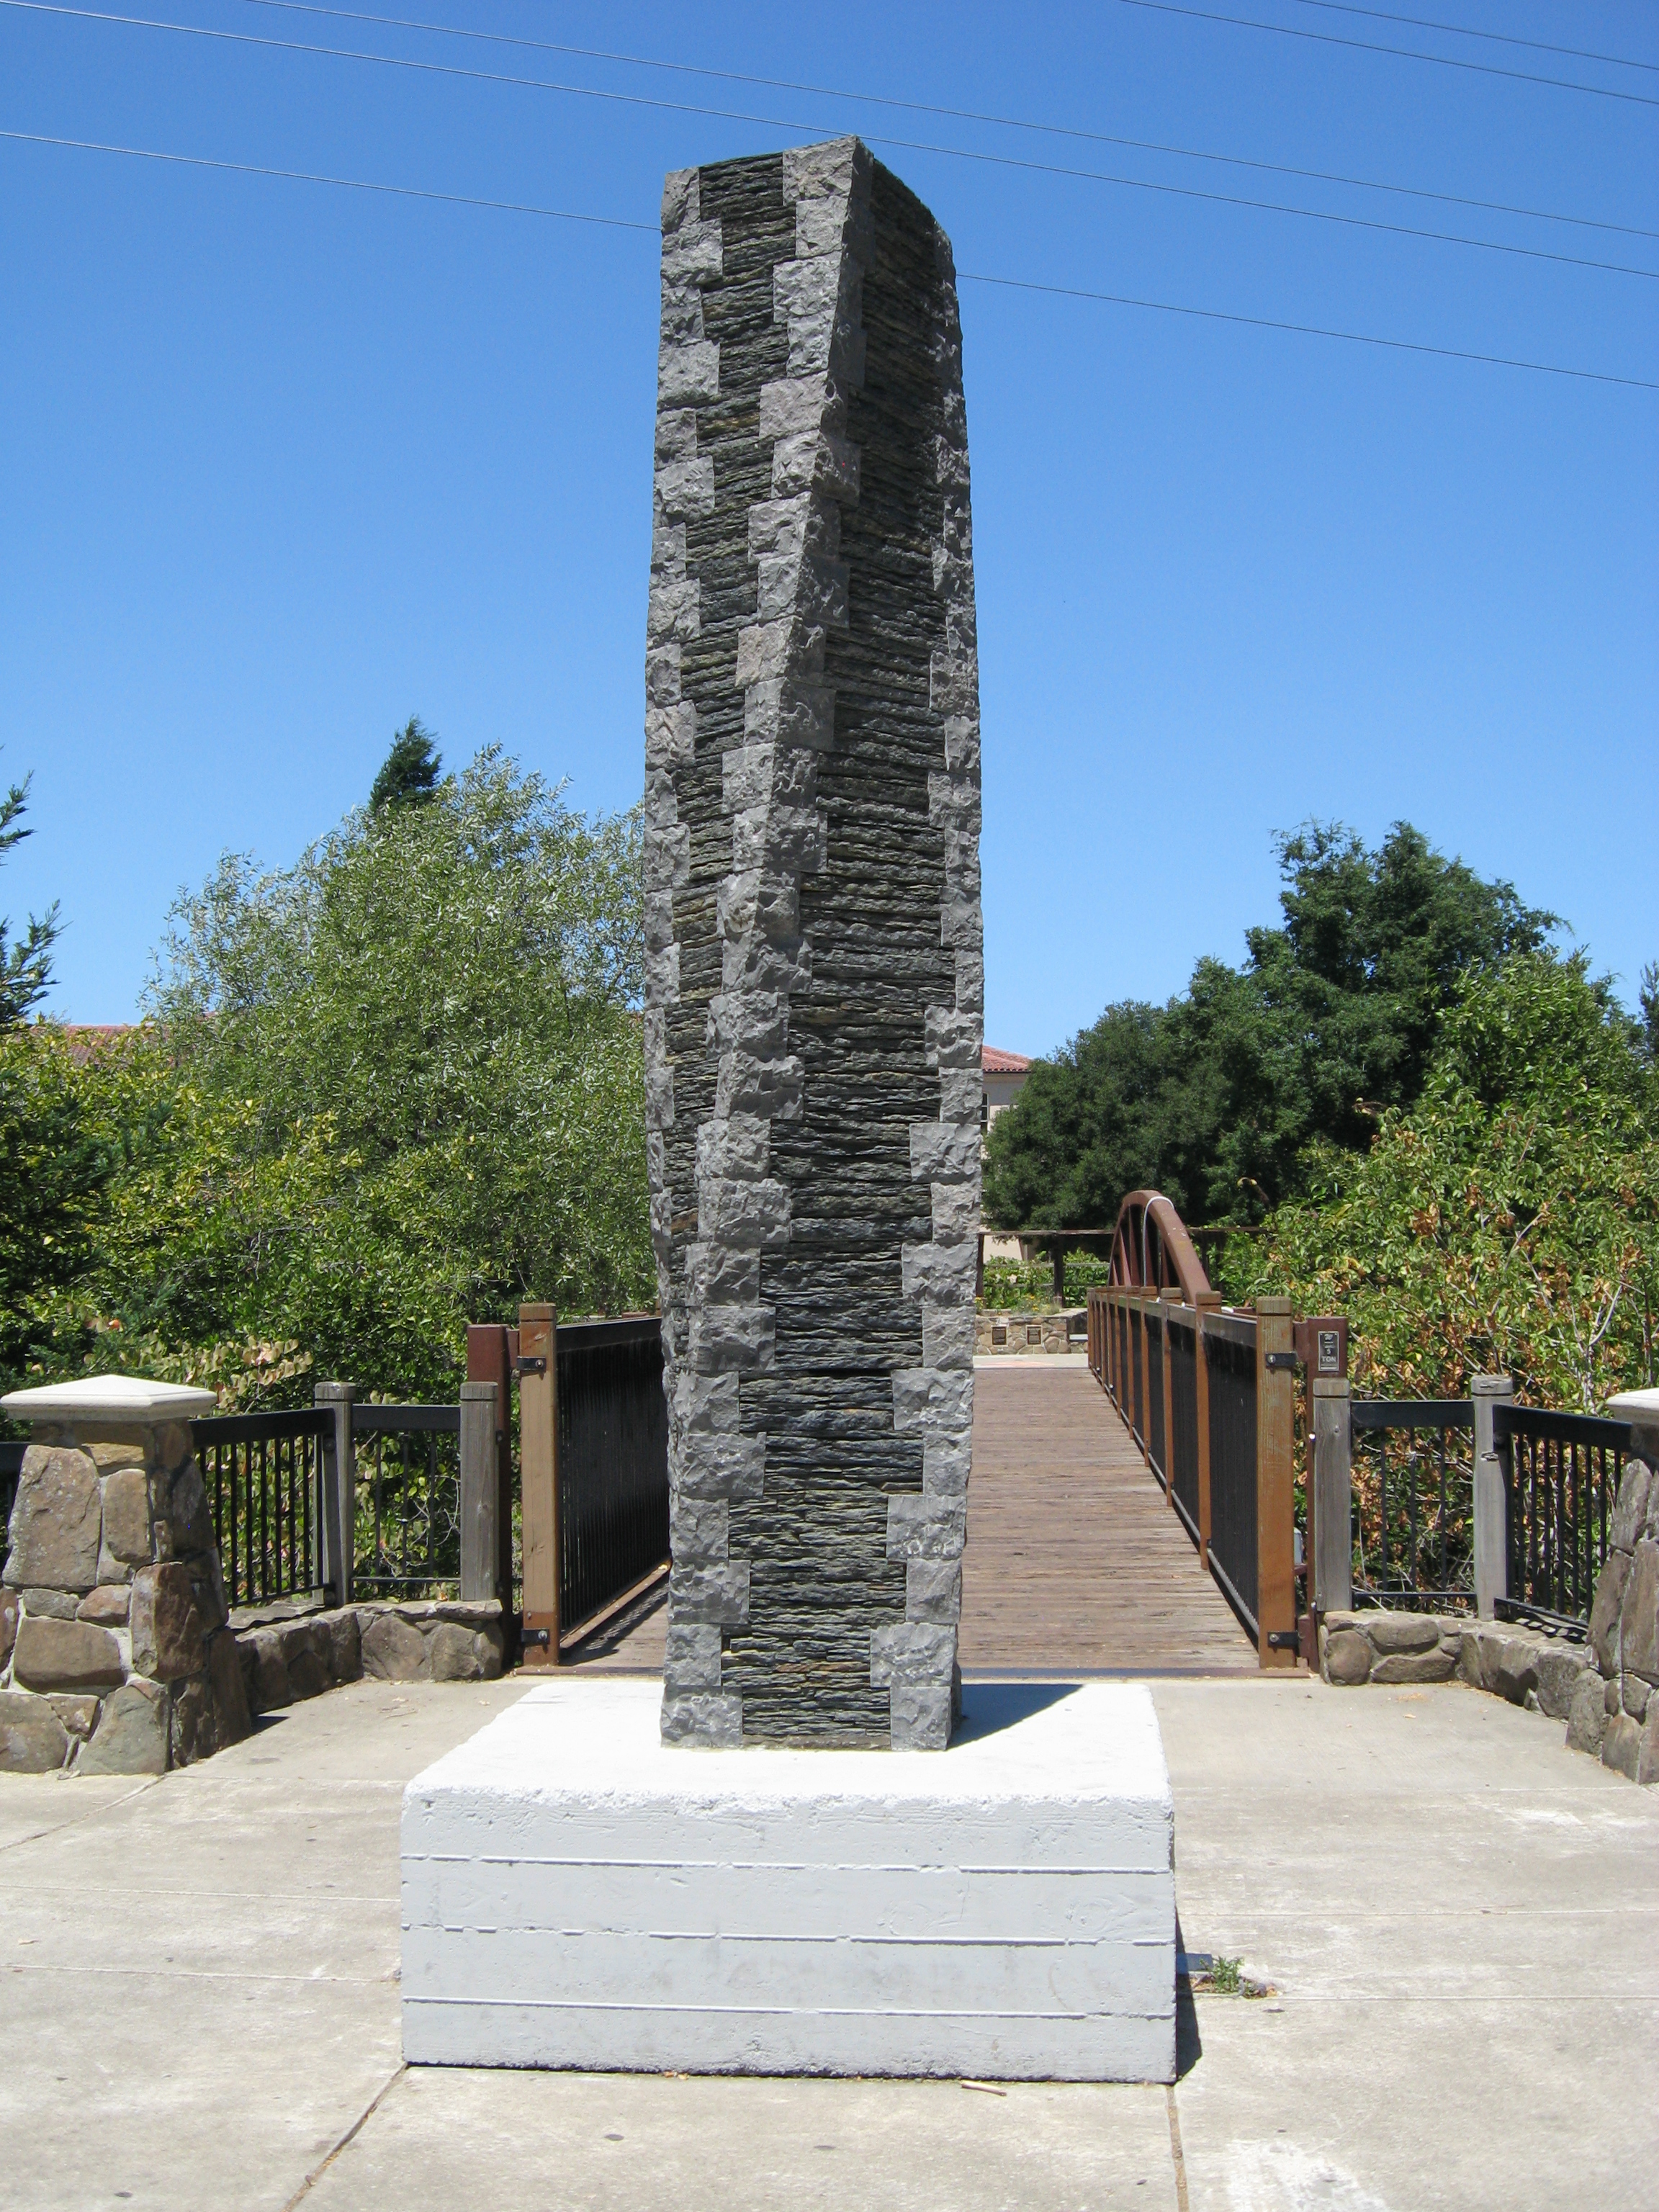 Torqued Column